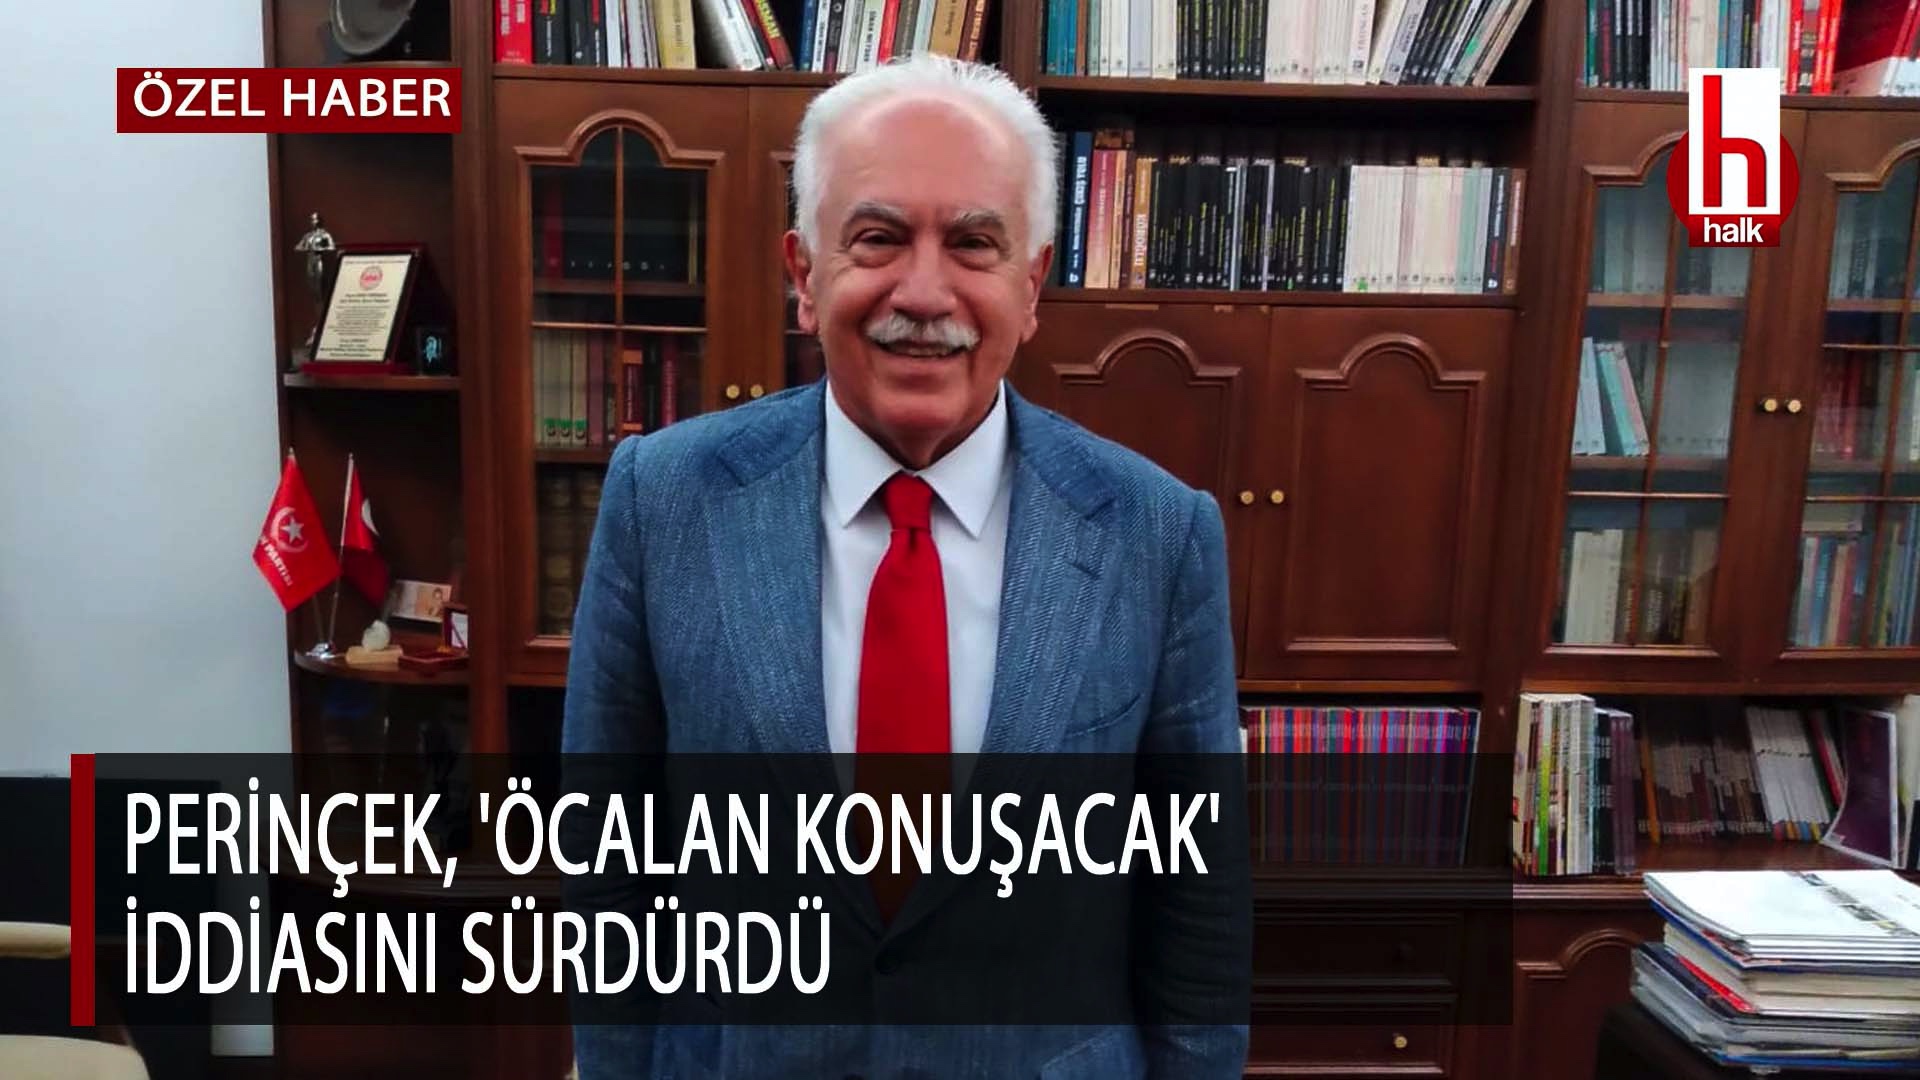 Perinçek, 'Öcalan konuşacak' iddiasını sürdürdü-ÖZEL